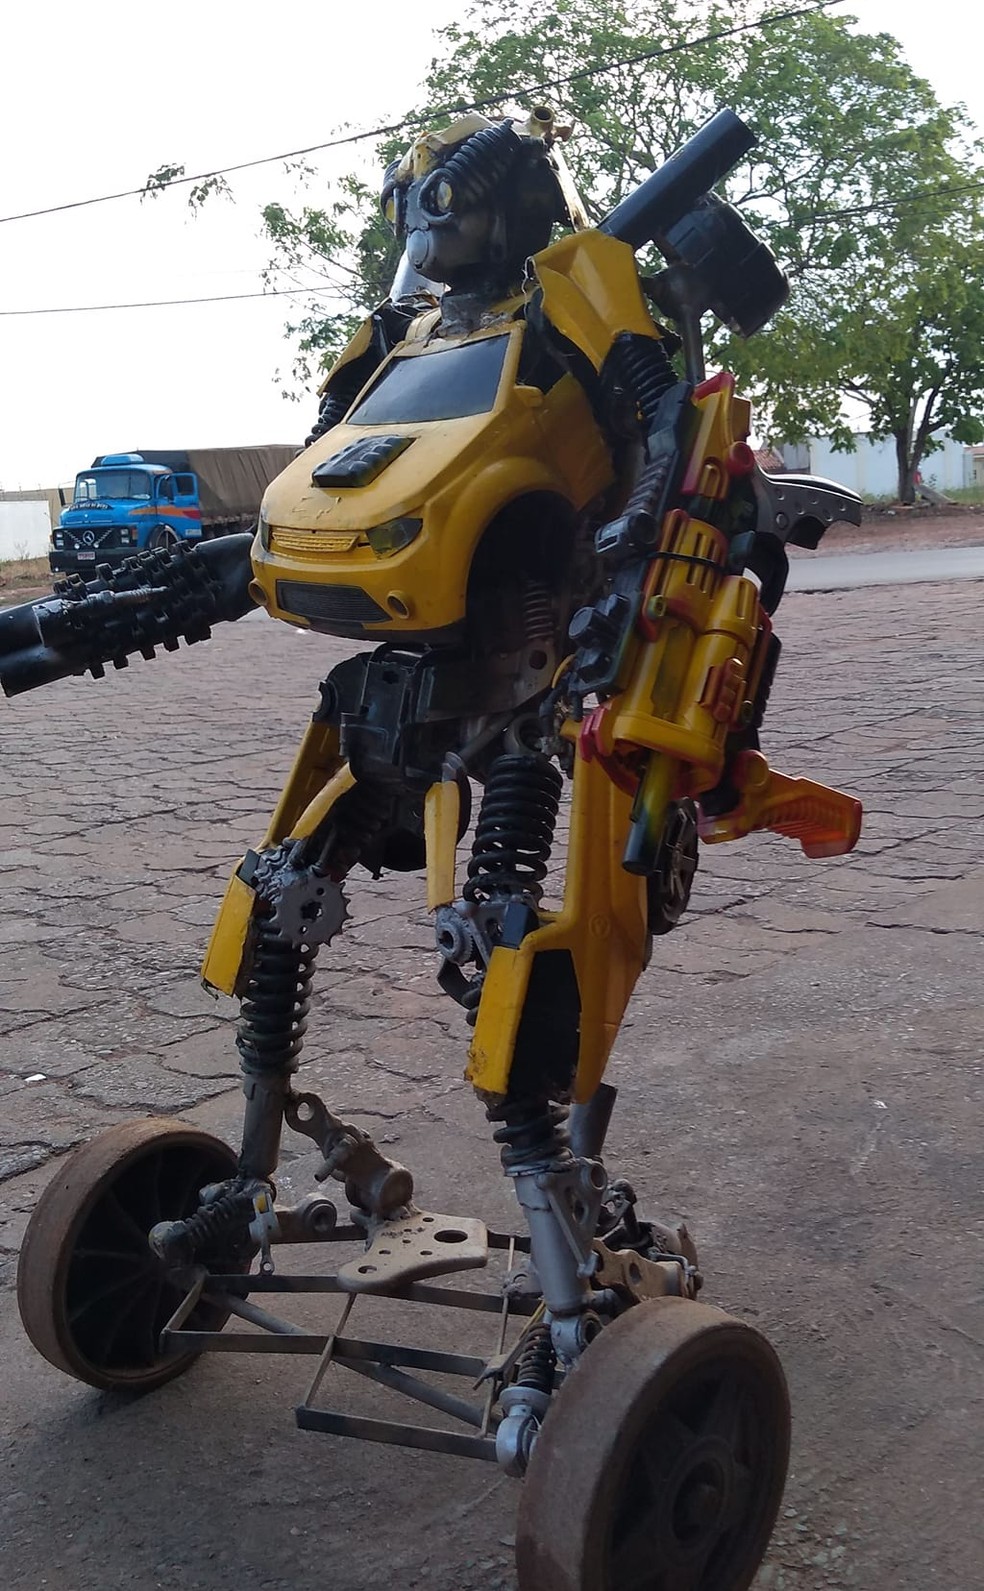 Robô 'transformers' foi construído por lavador de carros — Foto: Jocinei Oliveira/Arquivo pessoal